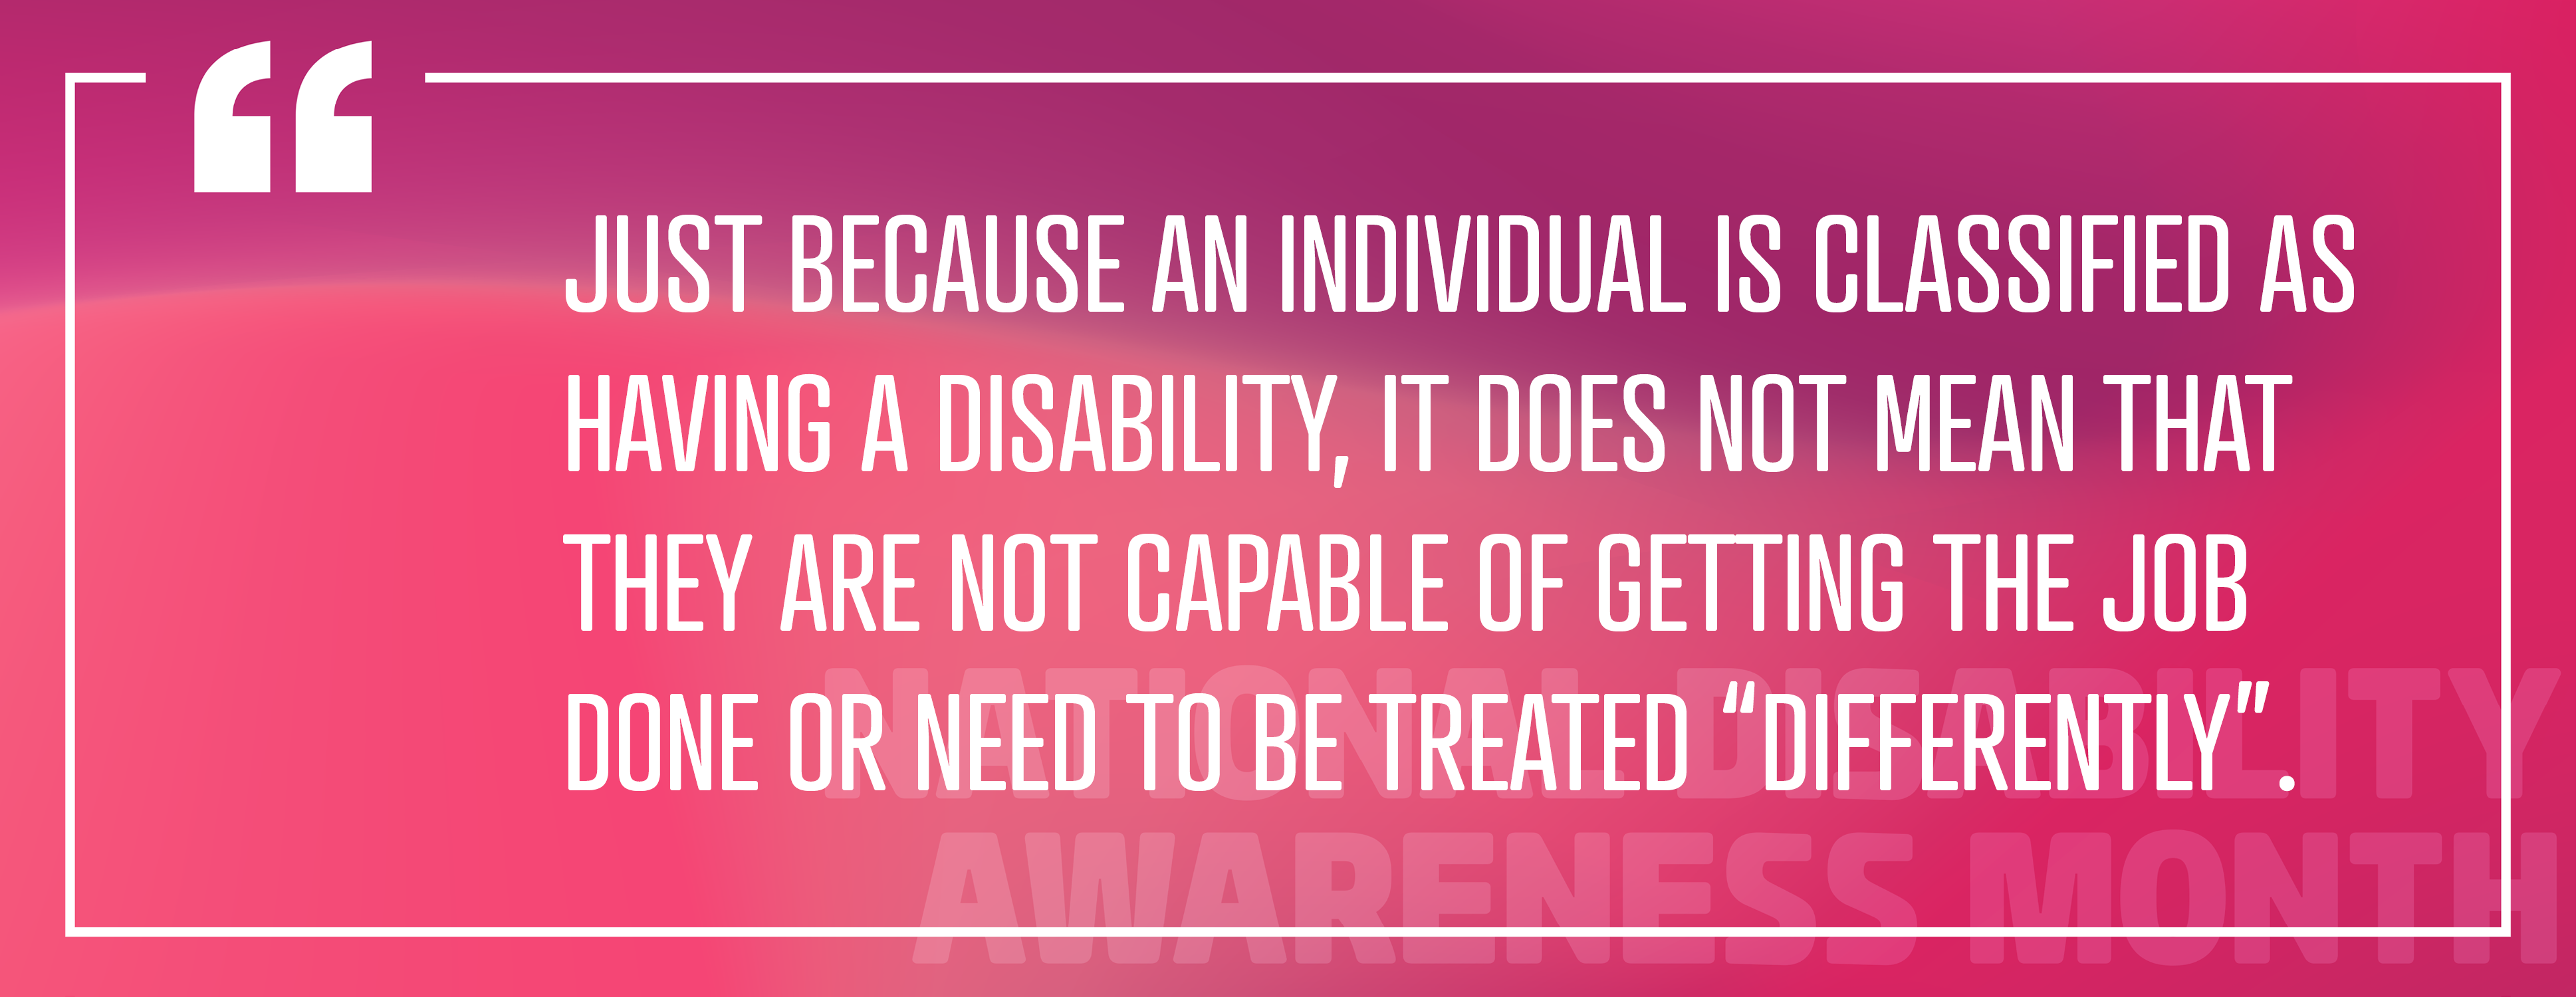 Imagen 4: "El hecho de que una persona esté clasificada como discapacitada no significa que no sea capaz de realizar el trabajo o que deba ser tratada" de manera diferente ".